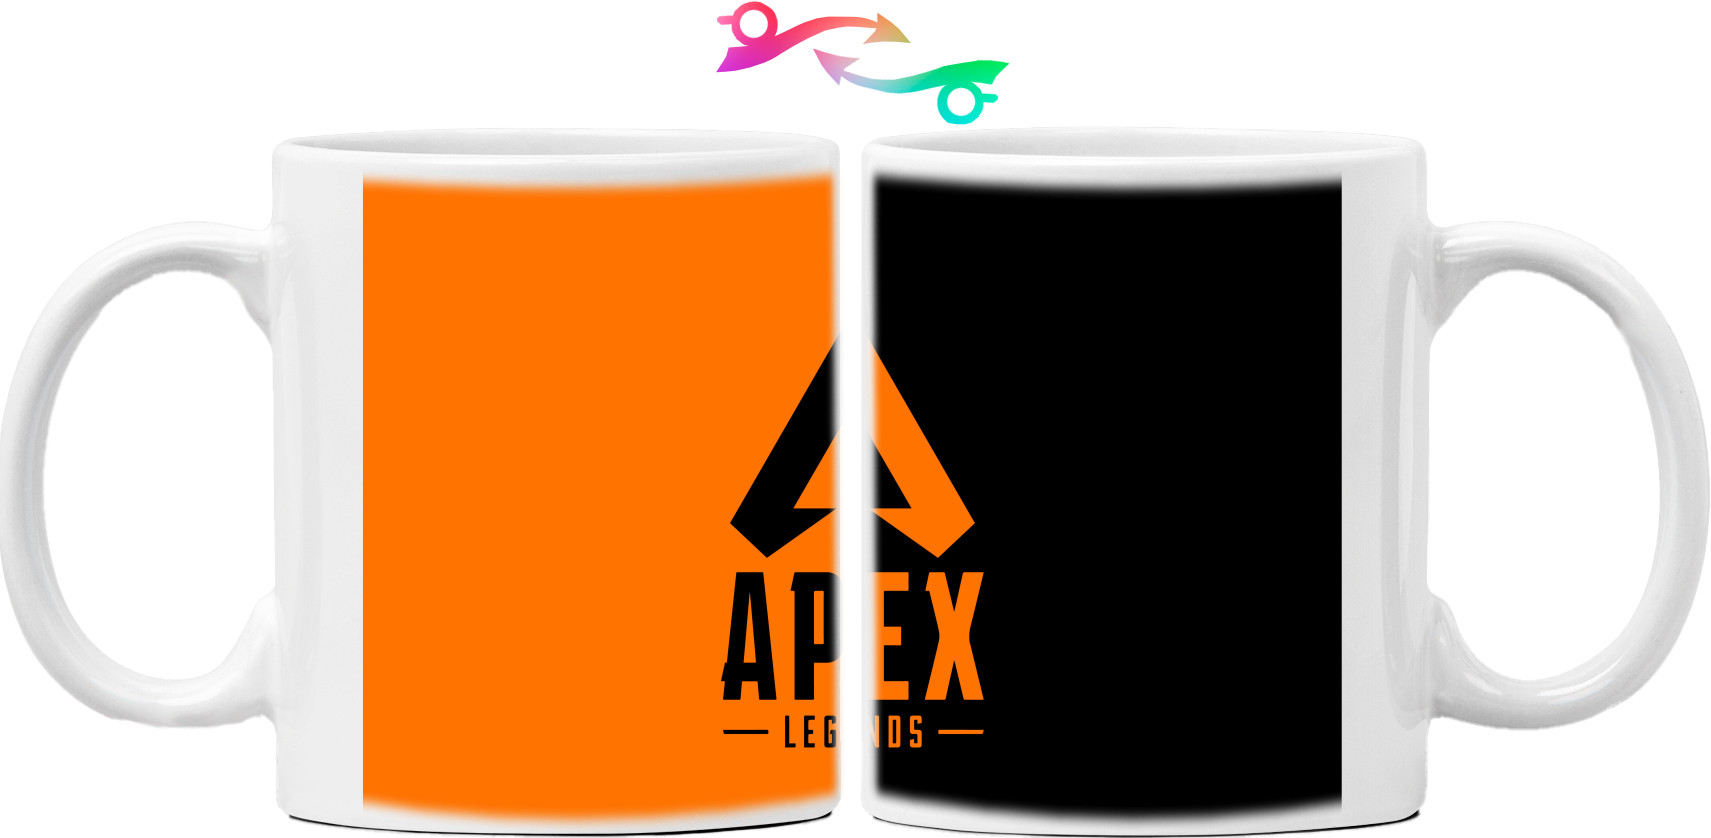 APEX LEGENDS 2